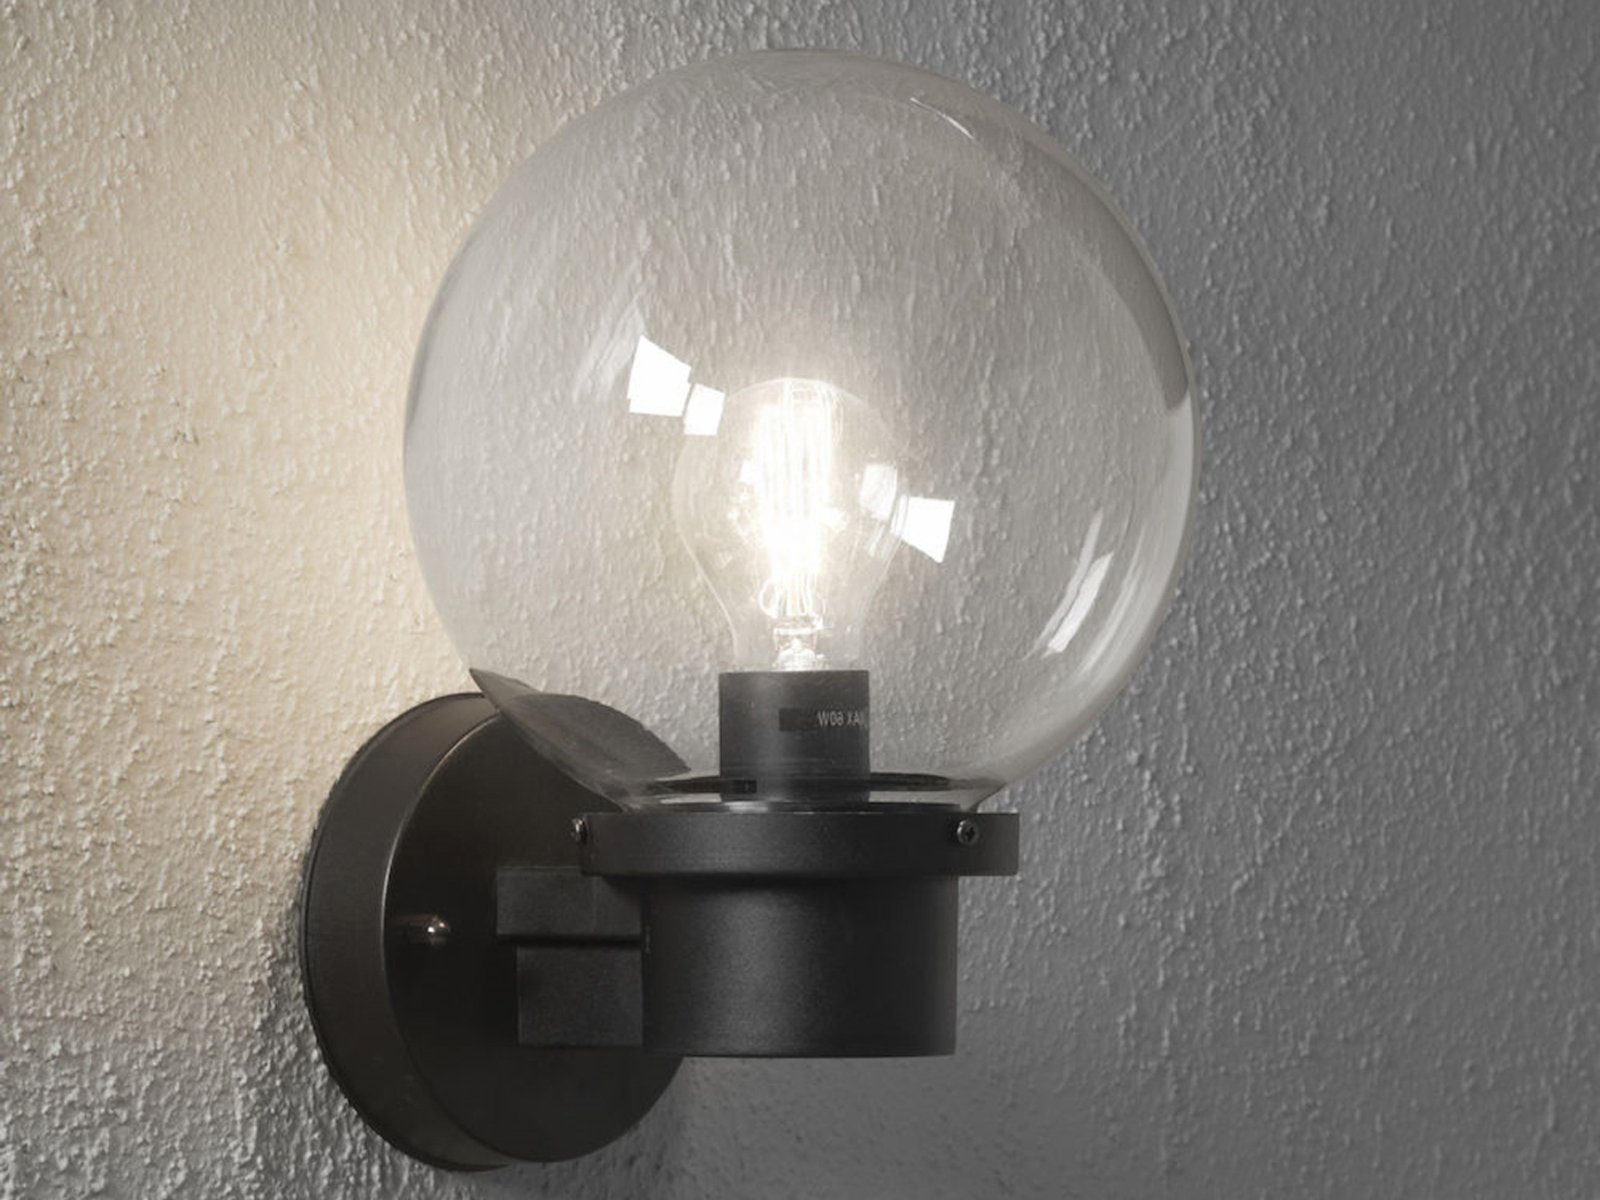 KONSTSMIDE LED Außen-Wandleuchte, LED wechselbar, Warmweiß, Fassadenbeleuchtung, Haus-wand beleuchten, Glas-kugel, Schwarz H: 29cm